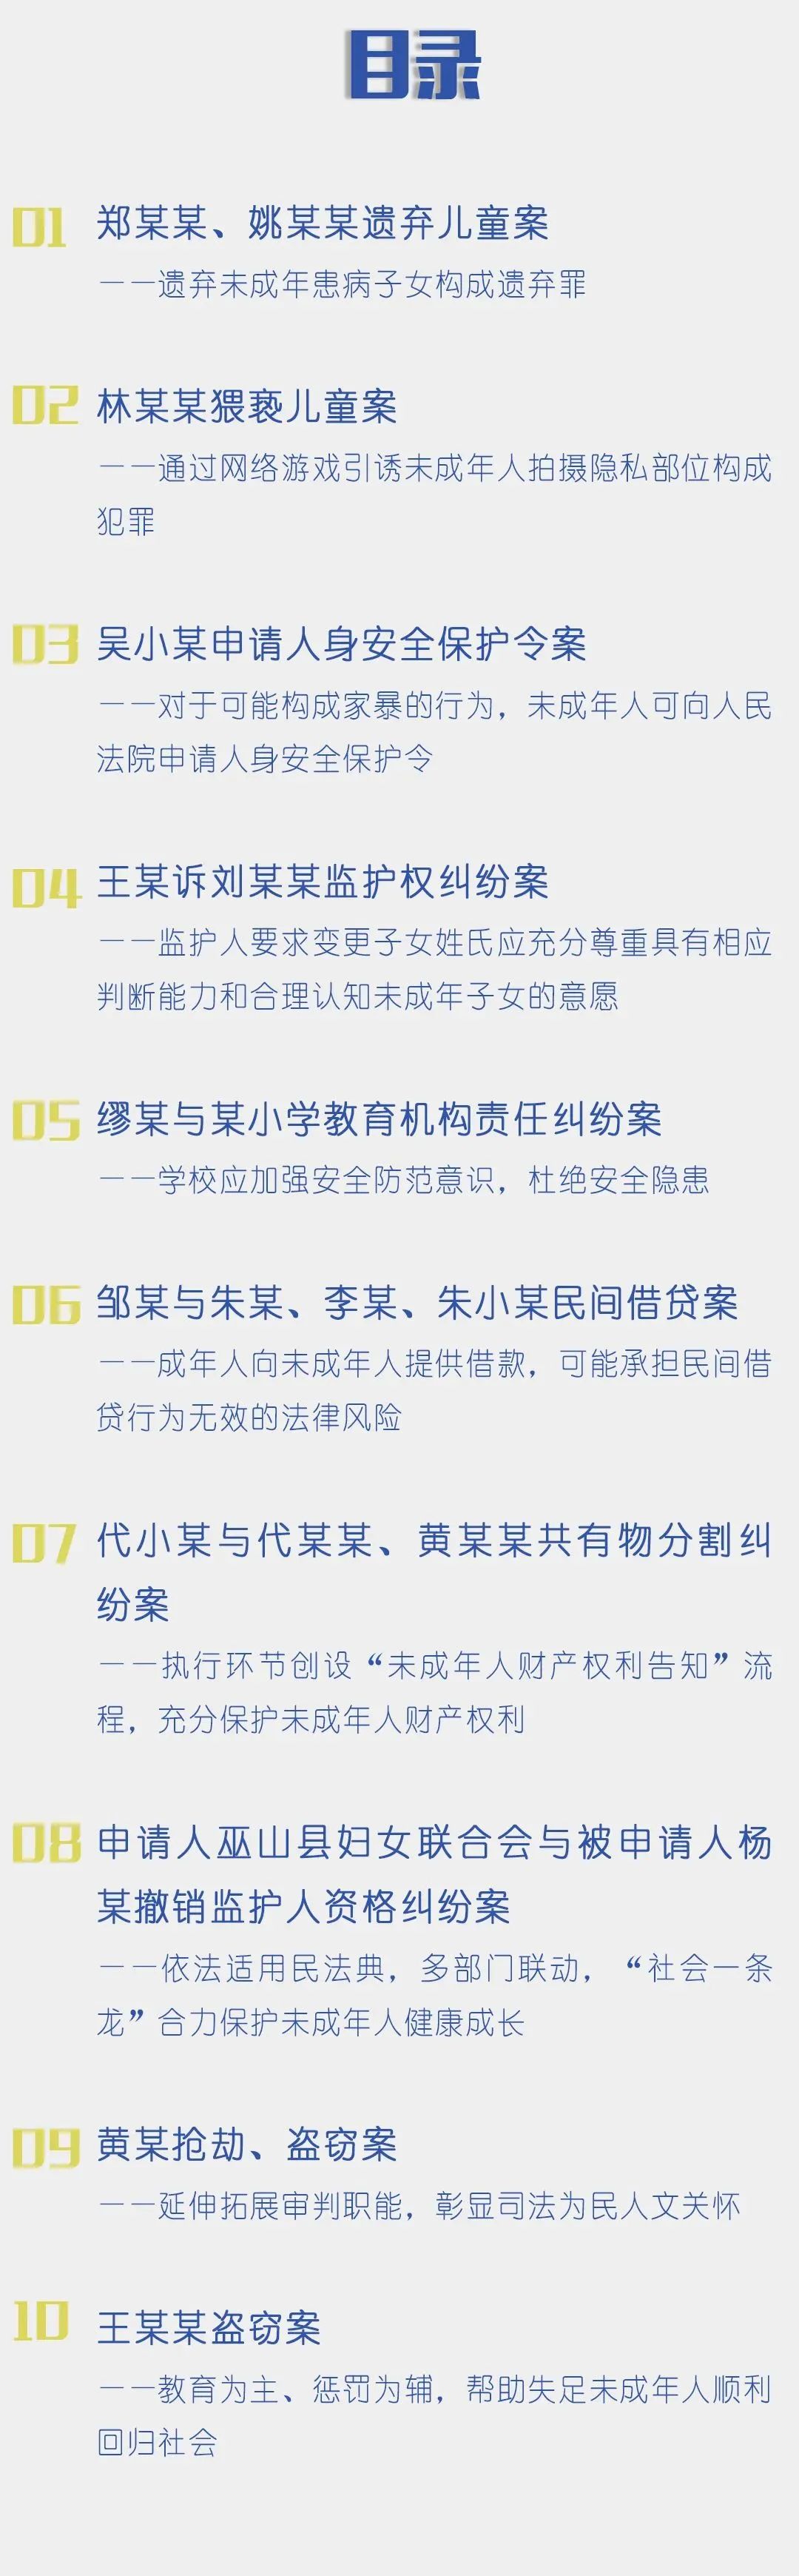 垫江法院一案例入选重庆法院第三批未成年人司法保护典型案例